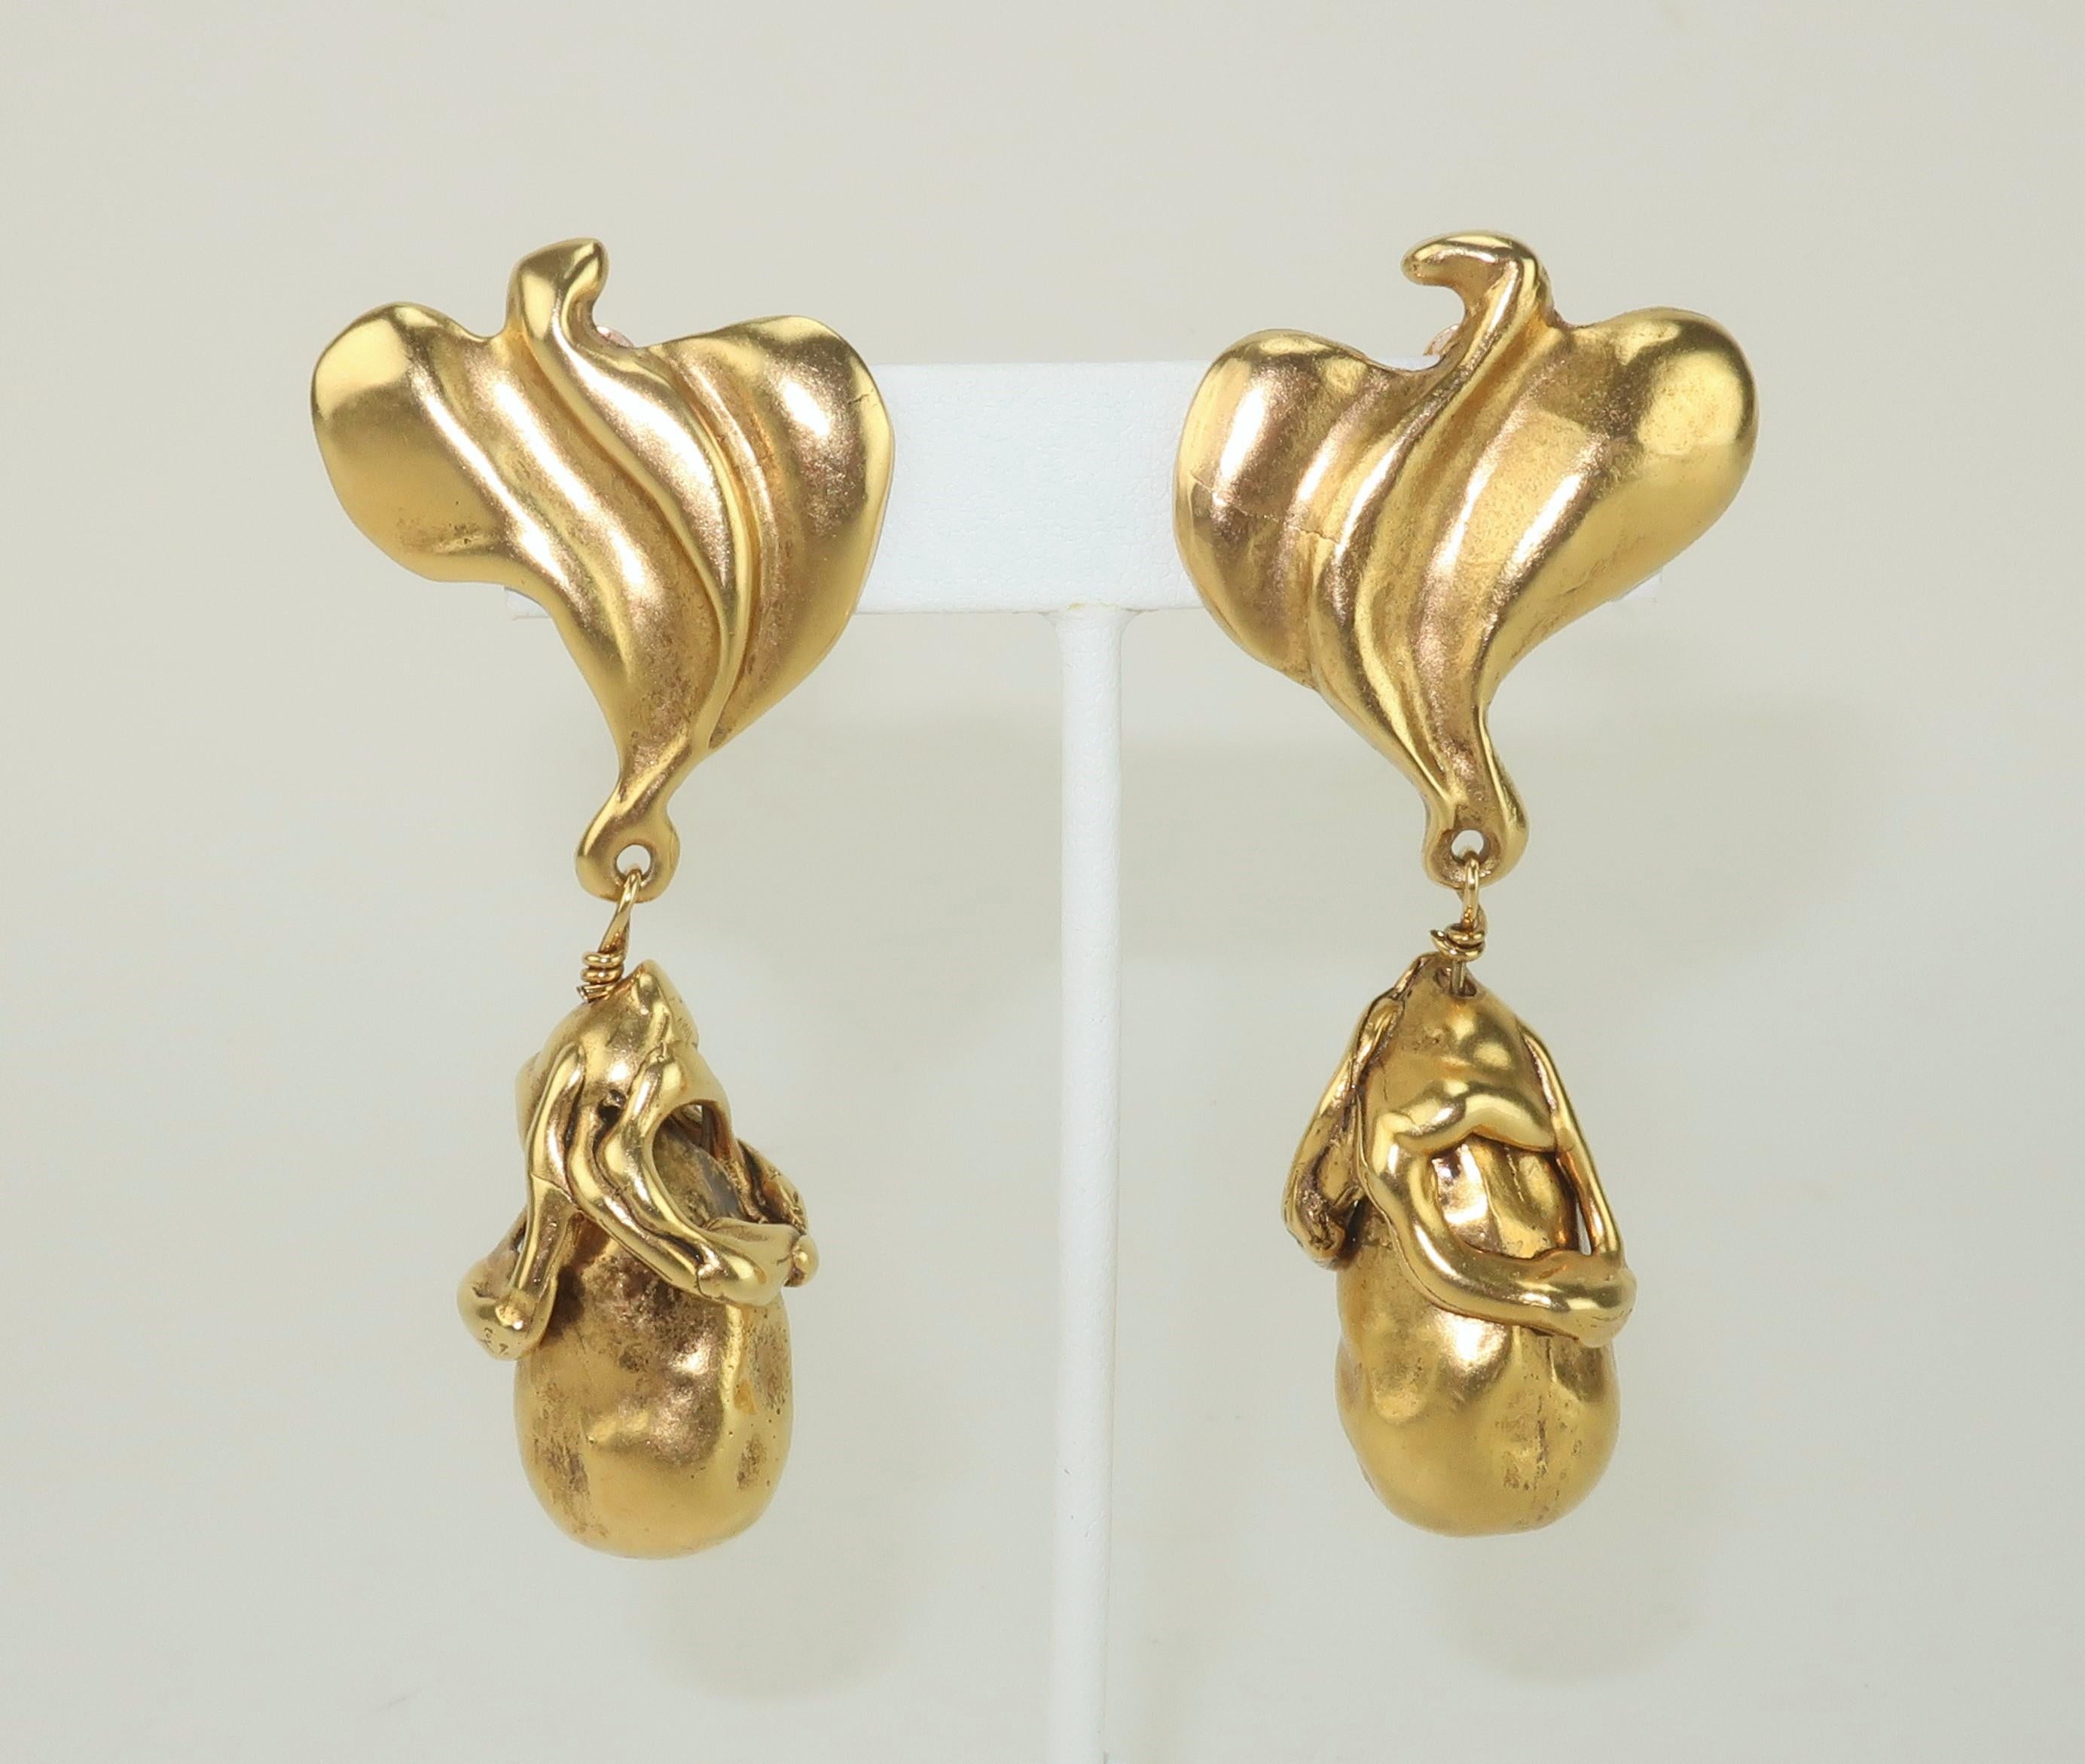 Fin du 20ème siècle Donna Karan, boucles d'oreilles à clip en ton or représentant des oiseaux abstraits et des pendentifs de style brutaliste.  Les boucles d'oreilles sont magnifiquement réalisées avec des détails de qualité et un look moderniste. 